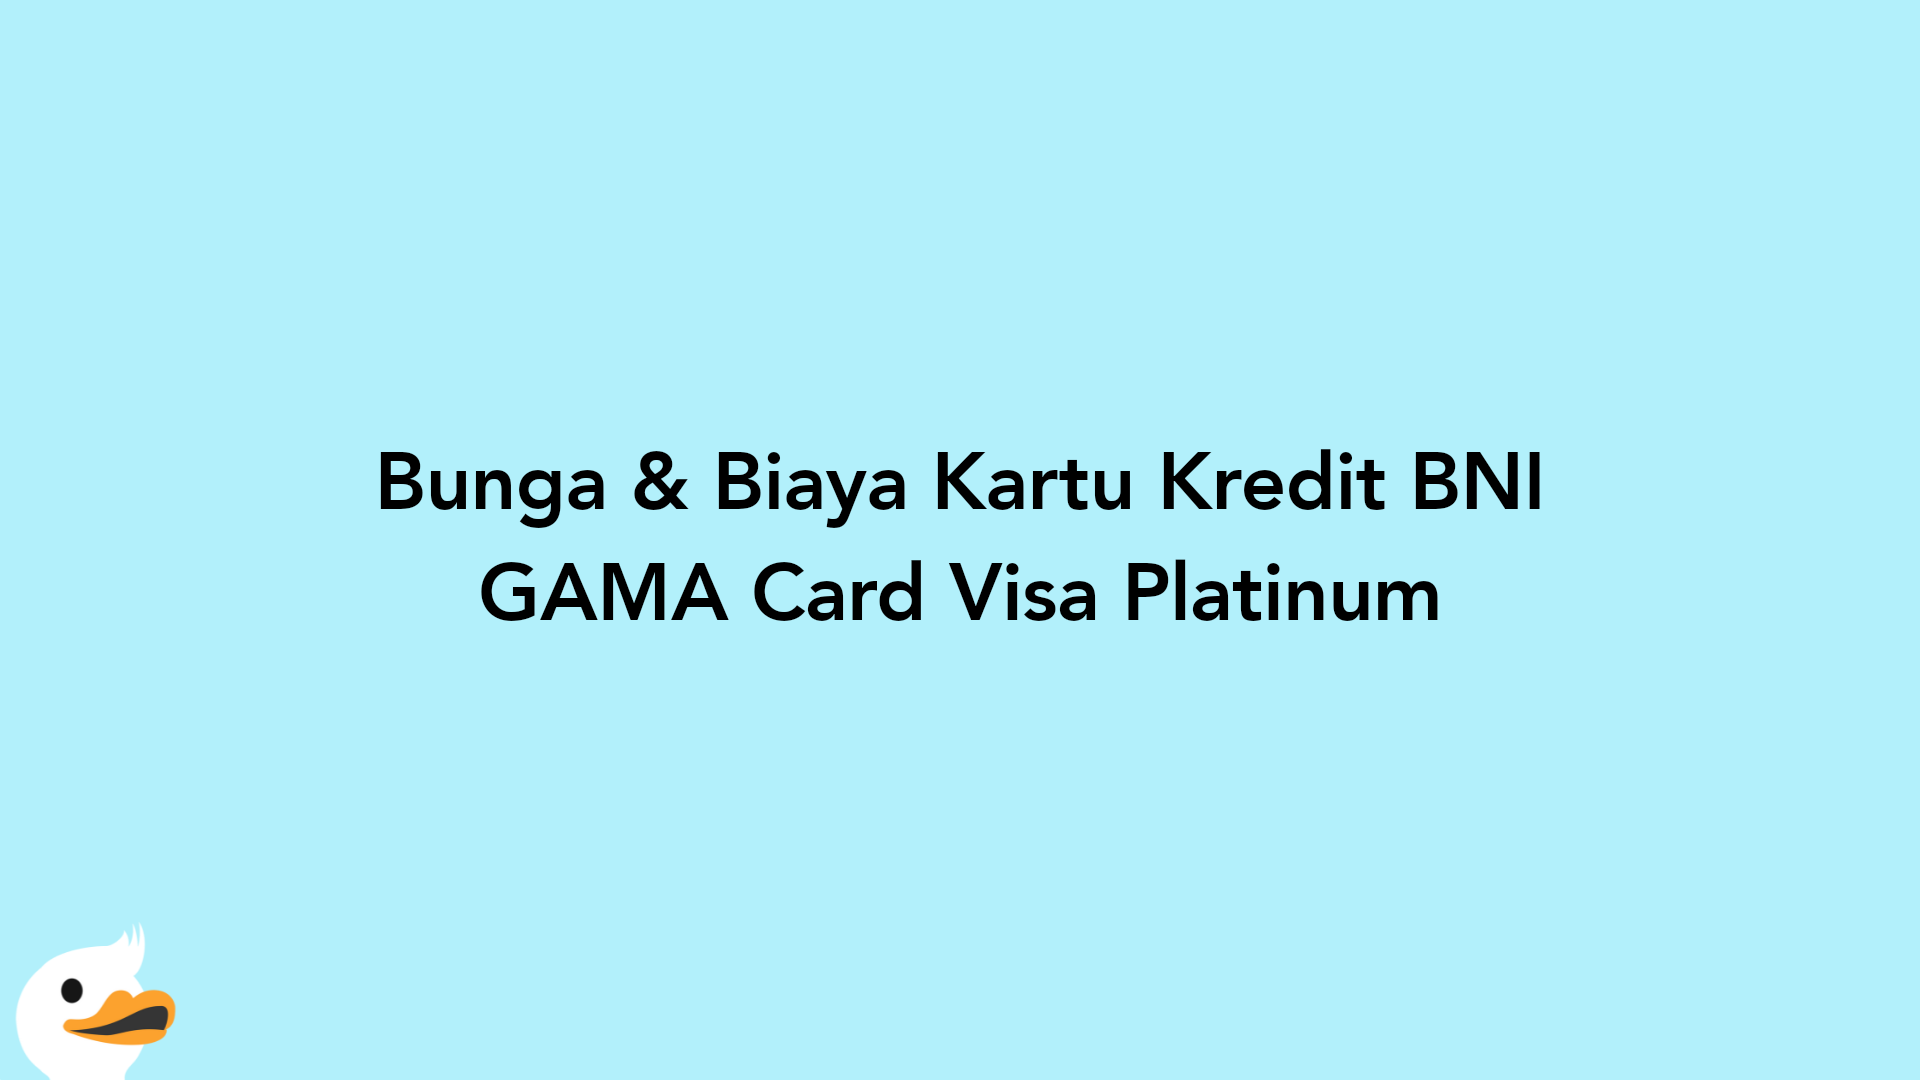 Bunga & Biaya Kartu Kredit BNI GAMA Card Visa Platinum